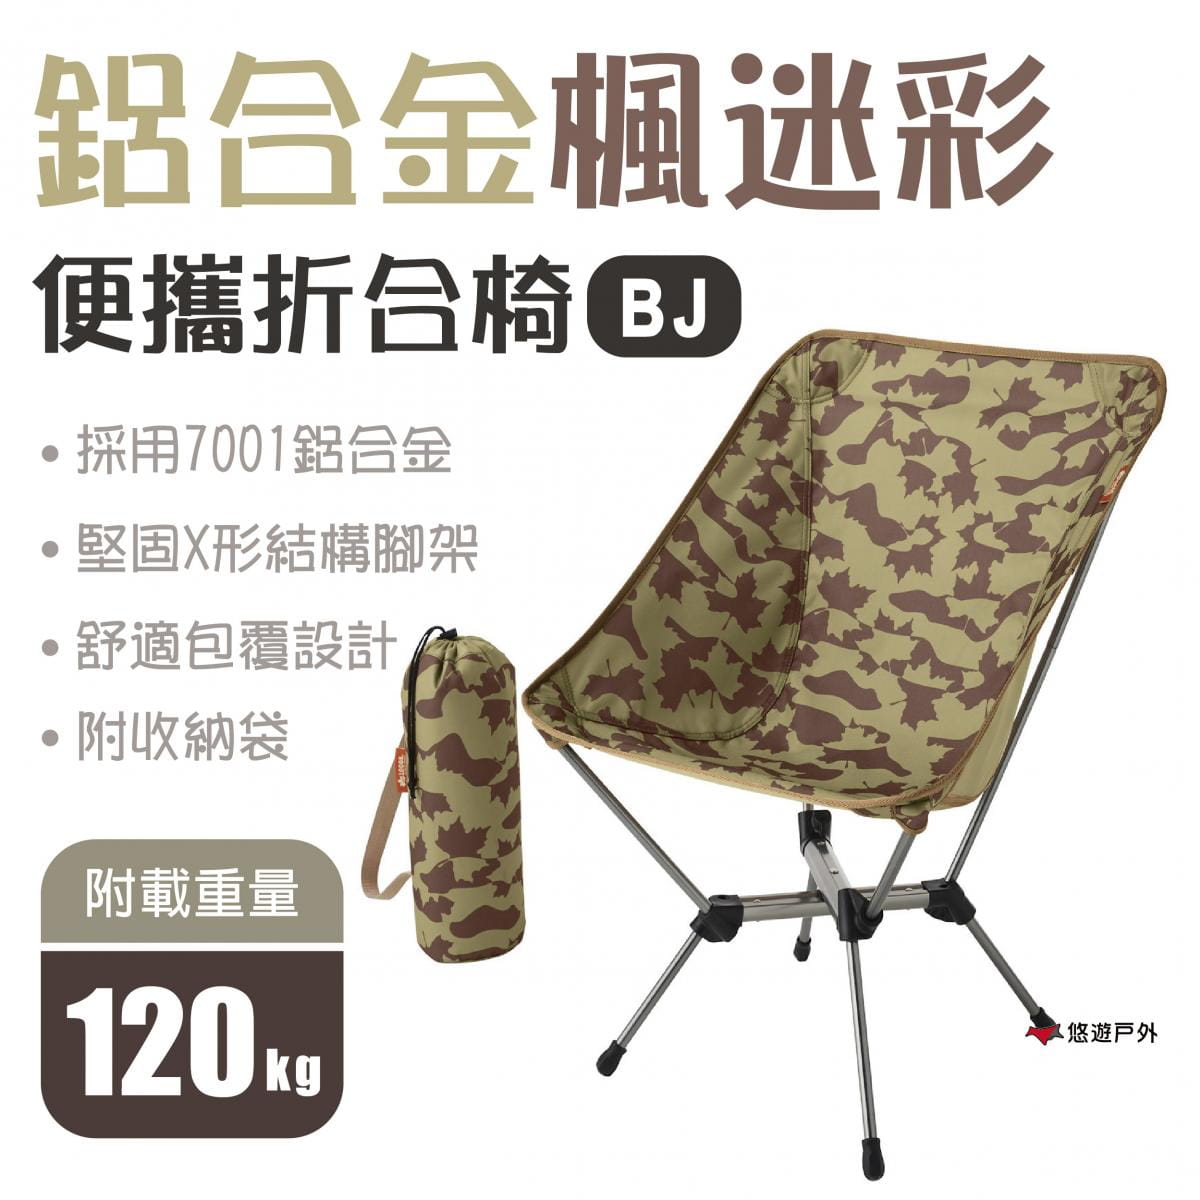 【日本LOGOS】鋁合金楓迷彩折合椅-BJ LG73173134 0